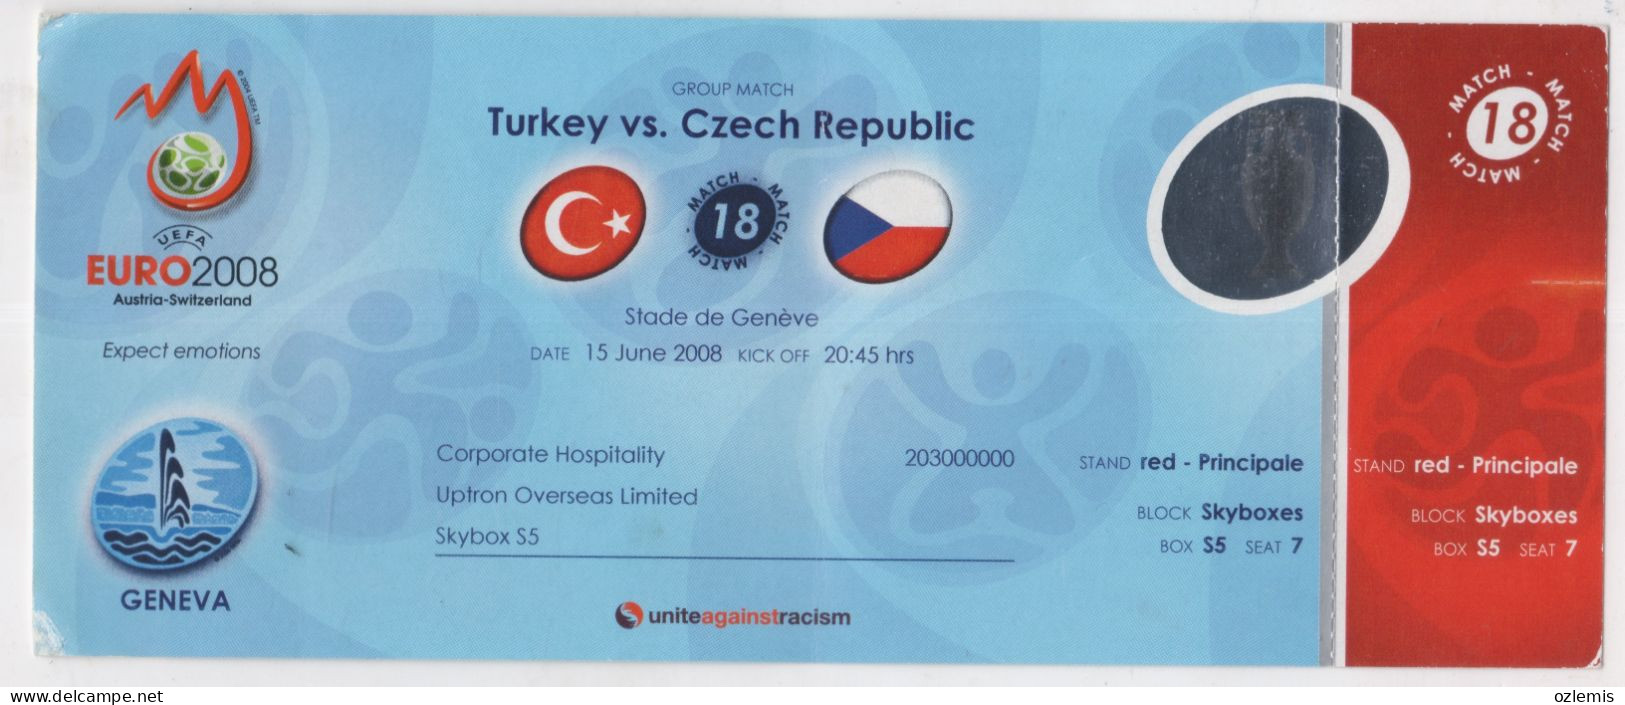 EURO 2008,AUSTRIA-SWITZERLAND ,GROUP MATCH ,TURKEY - CZECH REPUBLIC ,STADE DE GENEVA ,MATCH TICKET, - Match Tickets